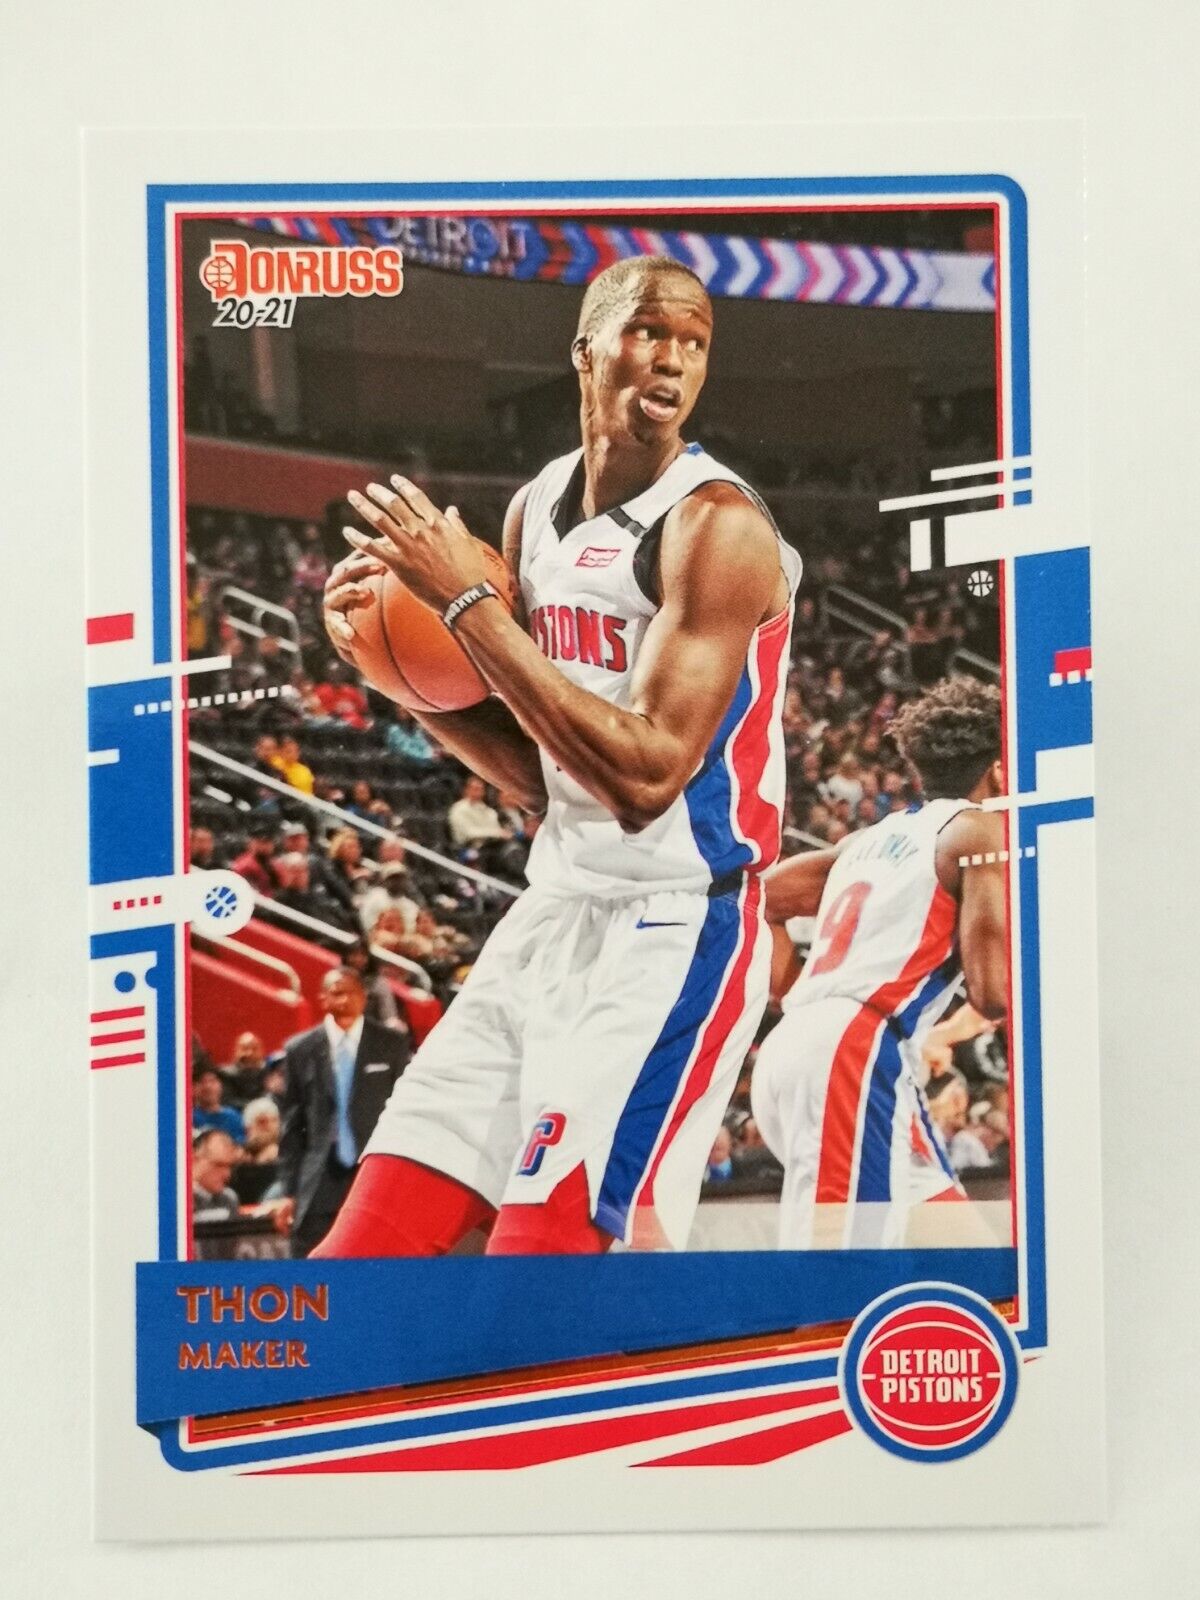 2020-21 Panini Donruss N15 NBA Trading Card #53 Detroit Pistons Thon Maker